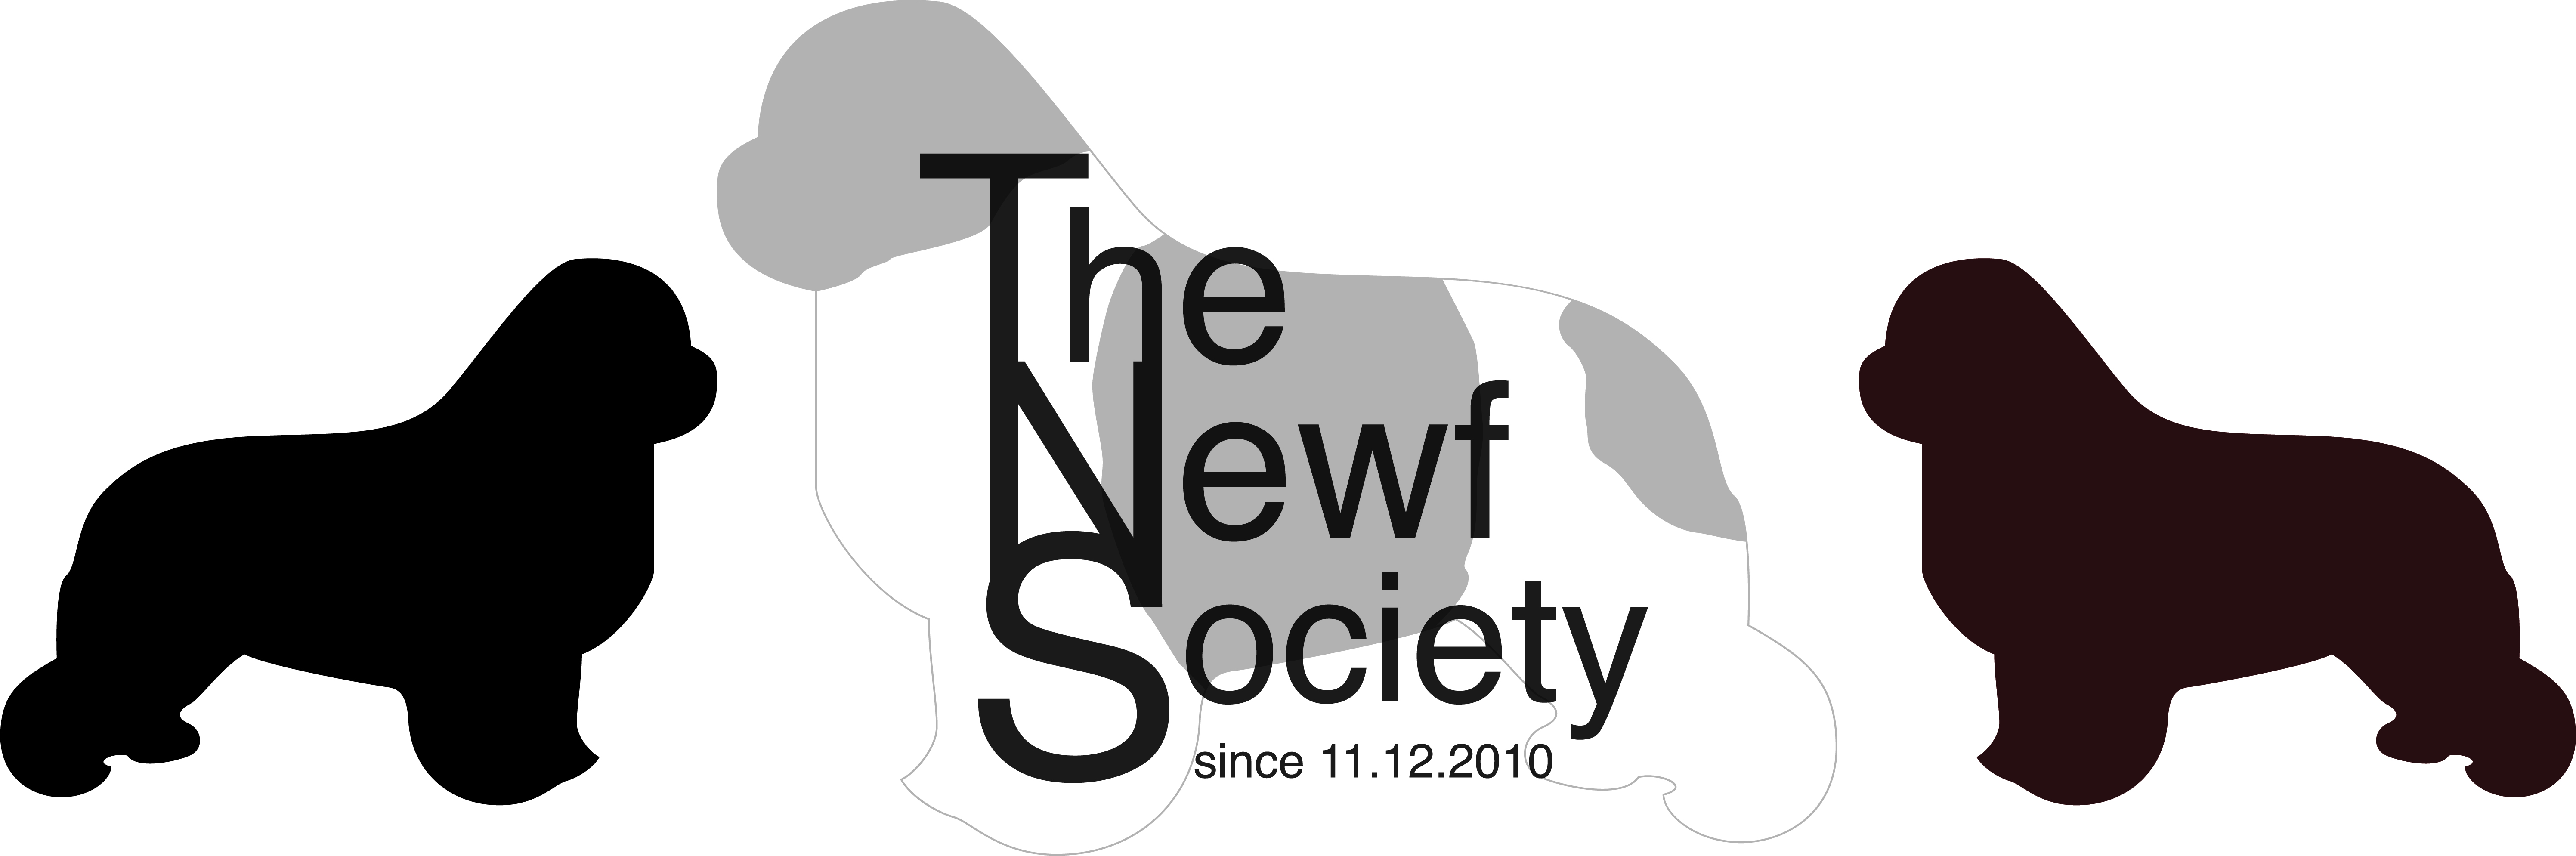 the_newf_society